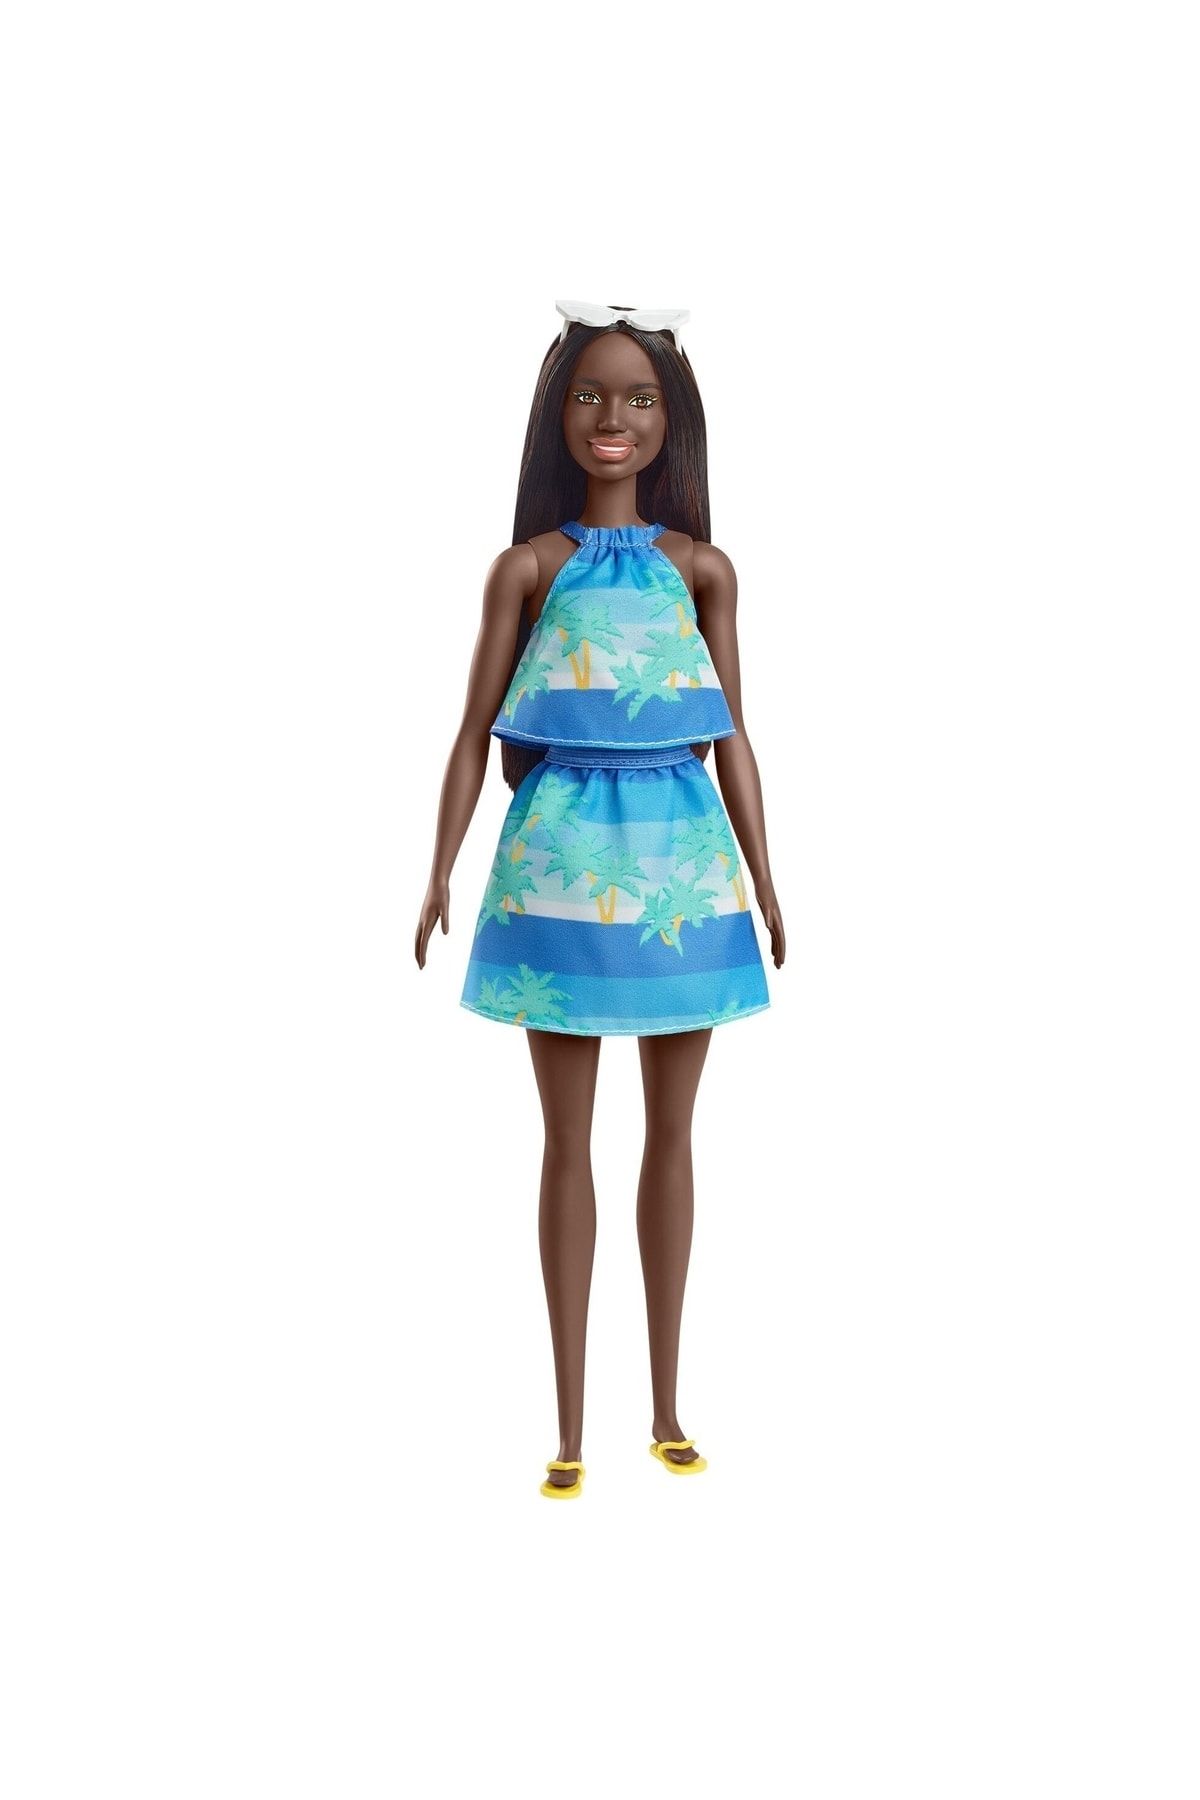 Barbie Loves The Ocean Doll Brunette Oyuncak Bebek Esmer